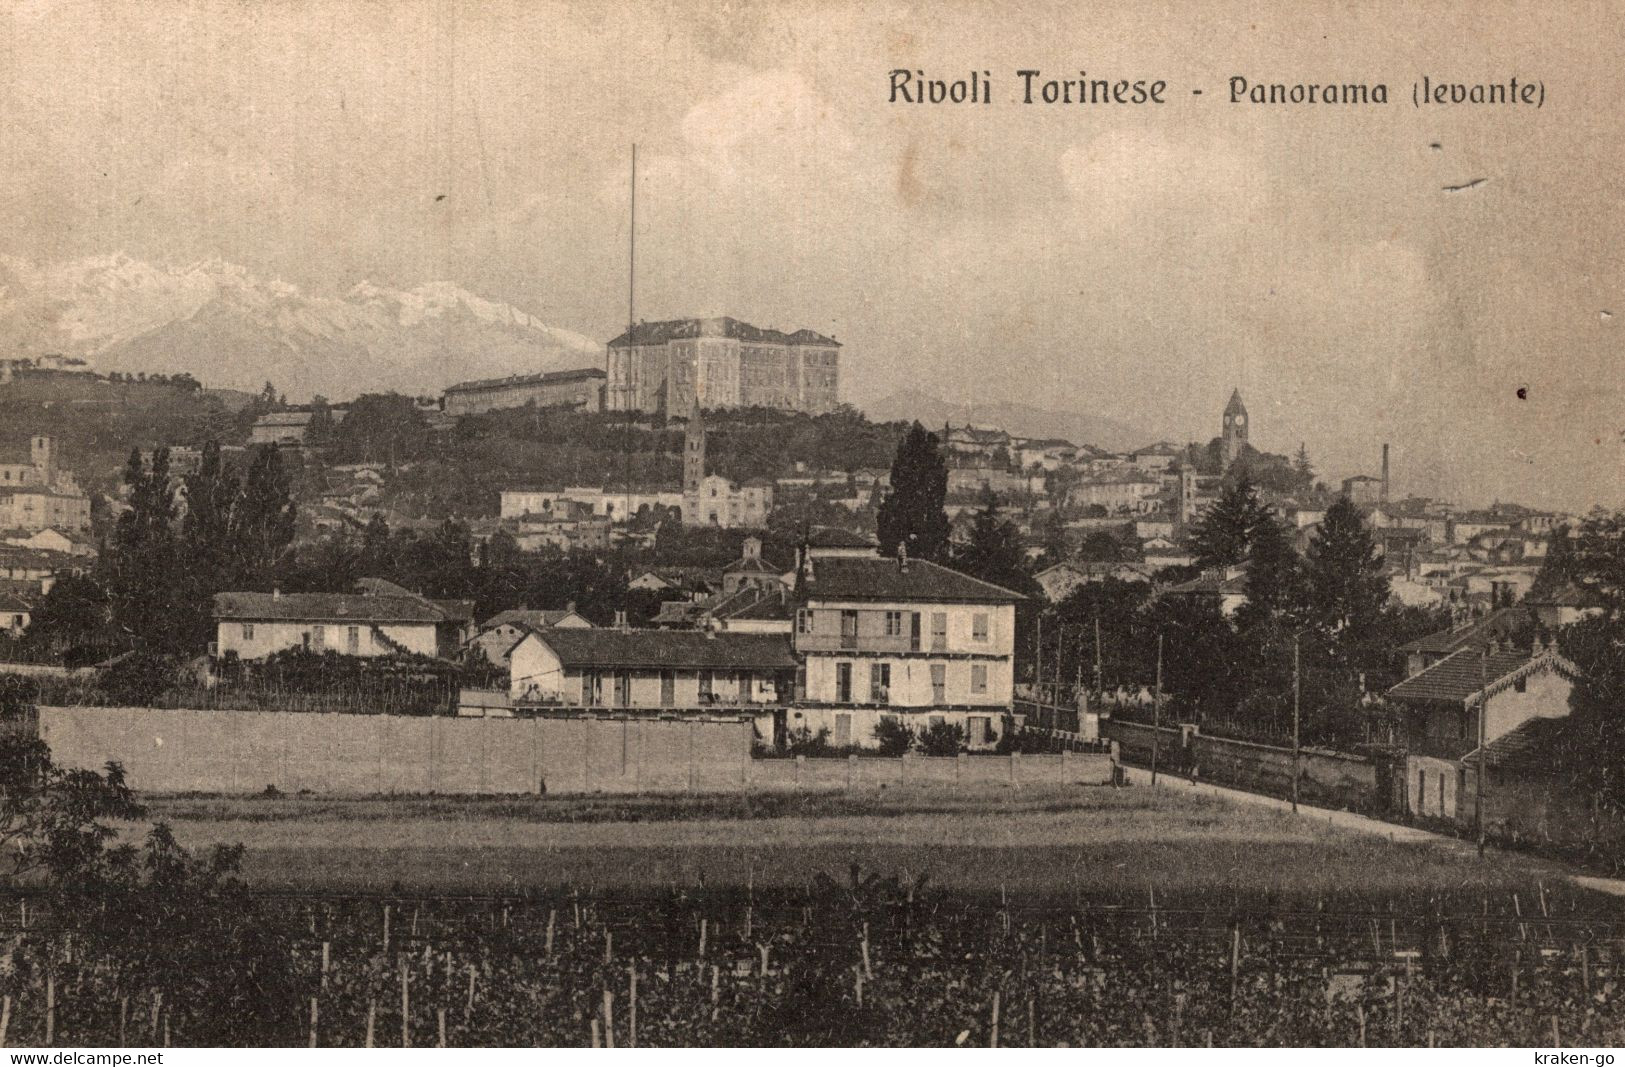 RIVOLI, Torino - Panorama - VG - #050 - Rivoli